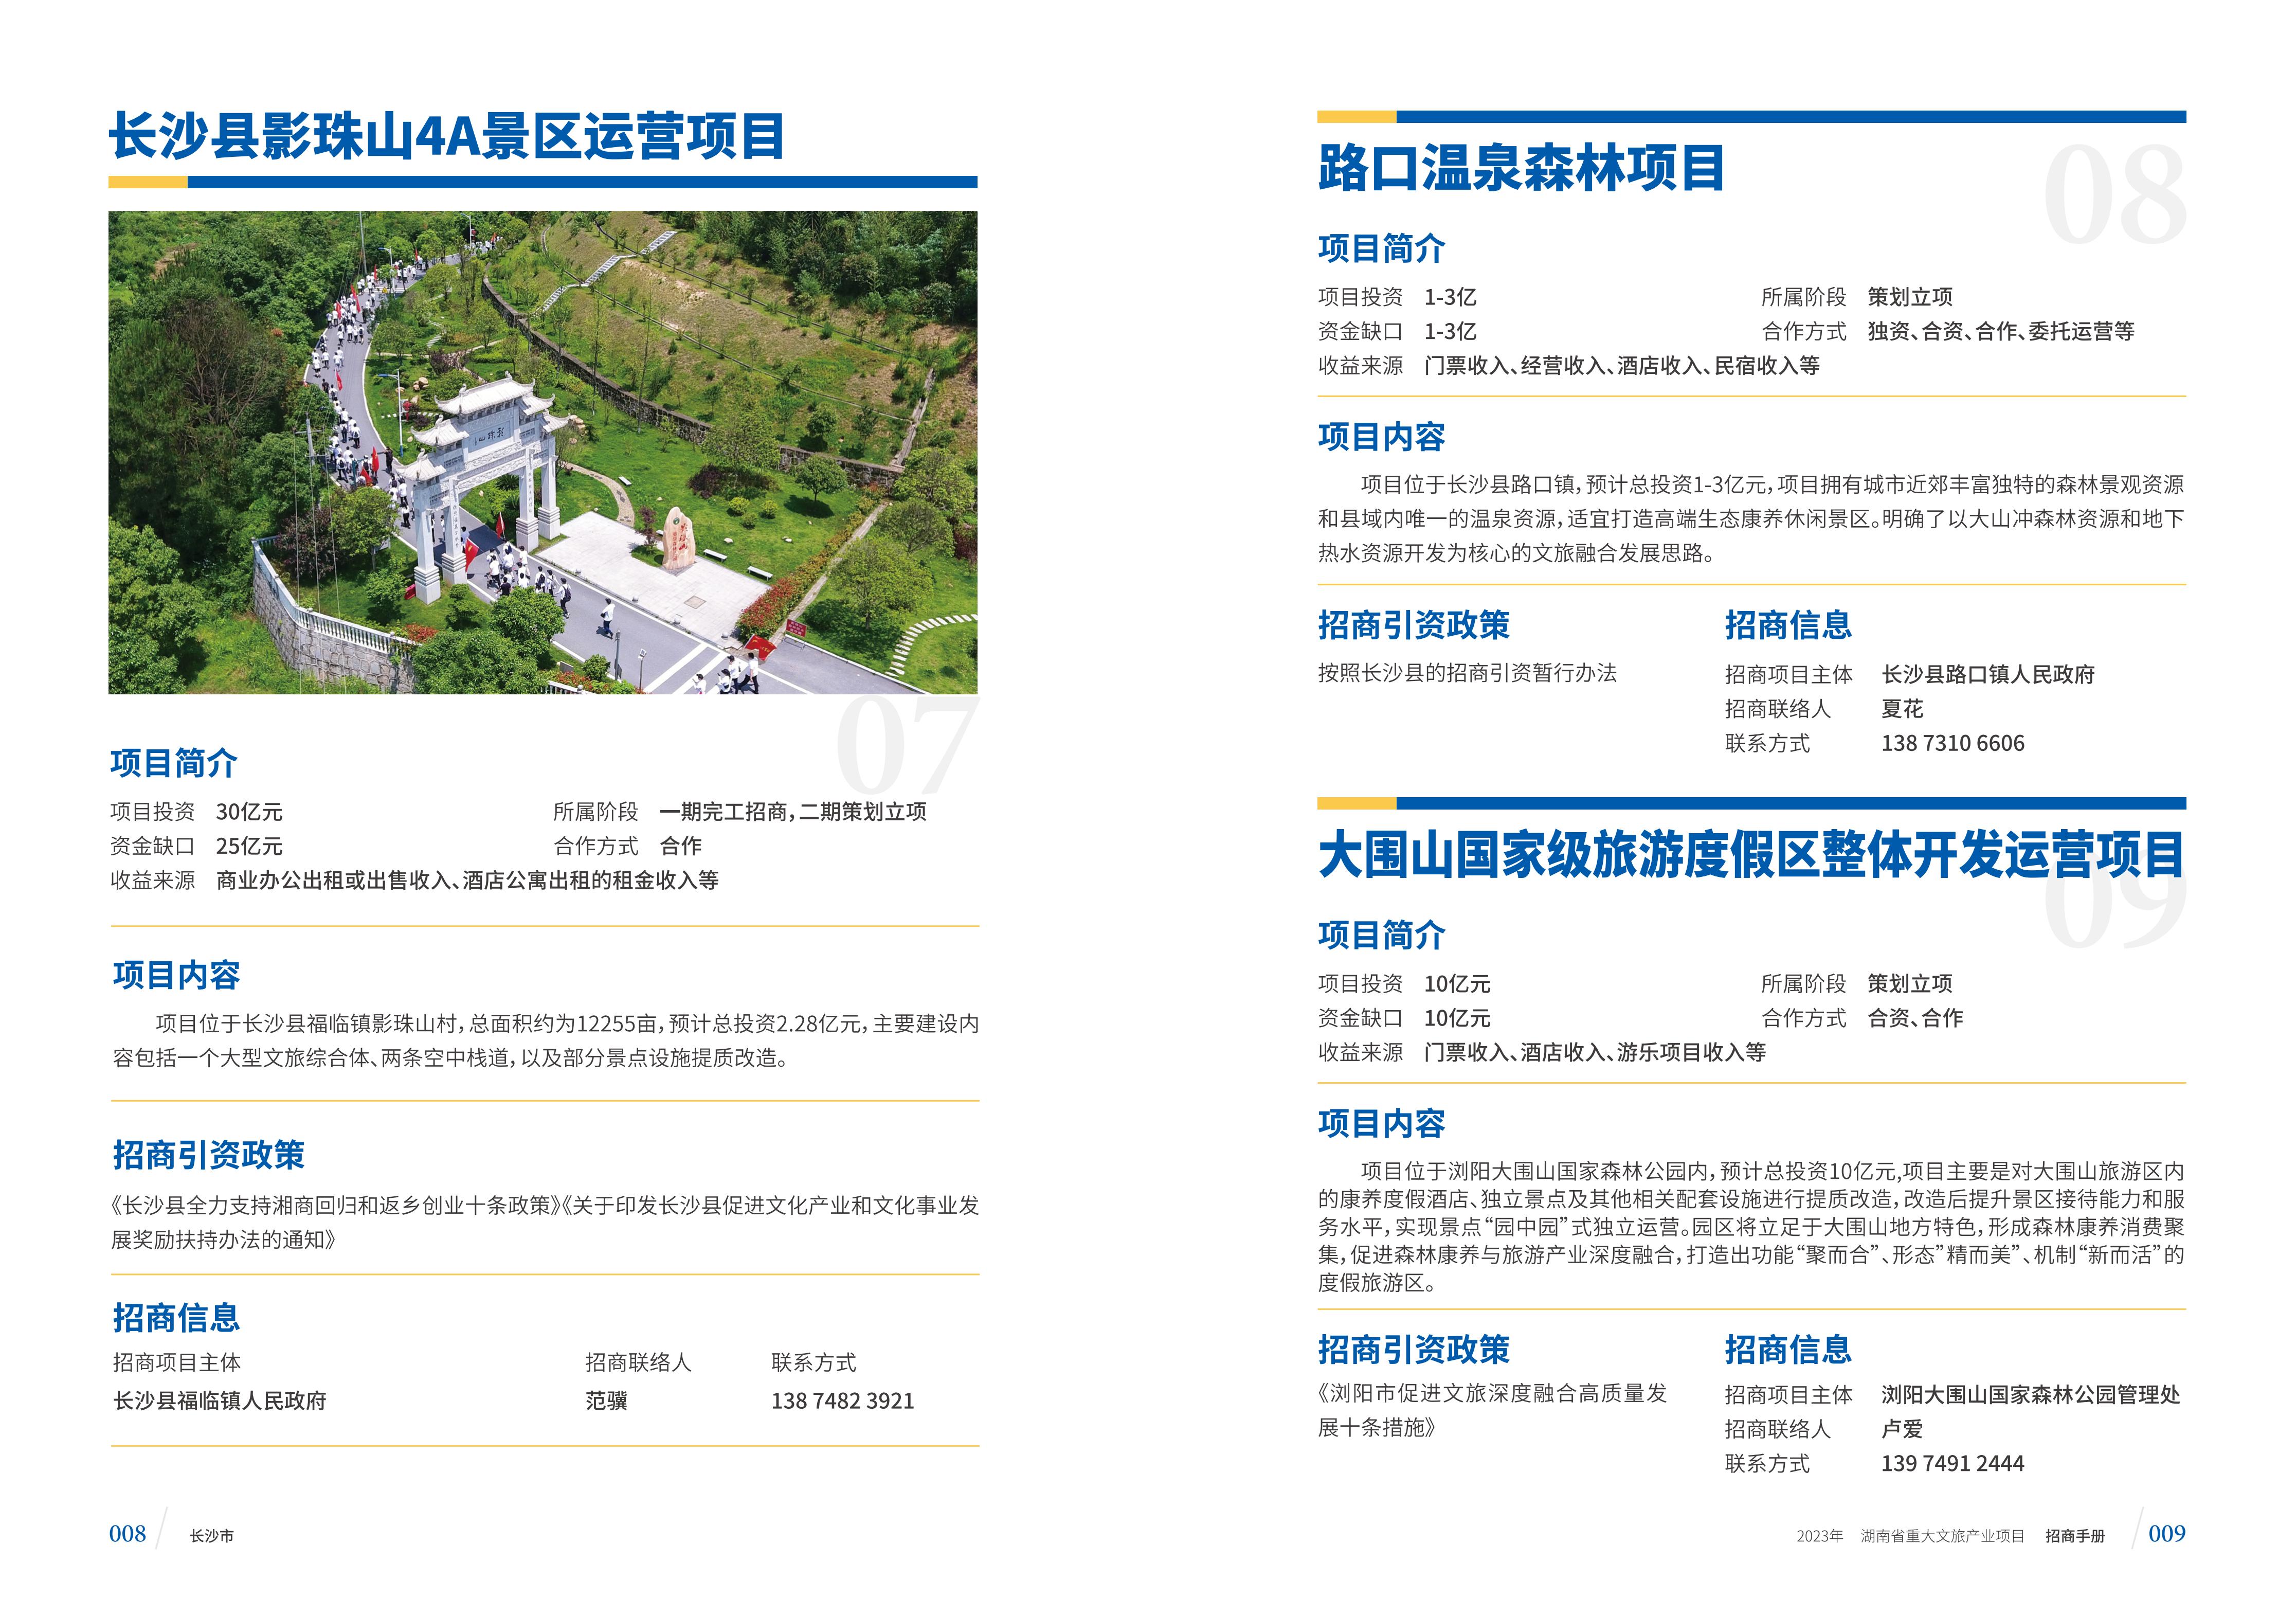 湖南省重大文旅产业项目招手册线上链接版_12.jpg